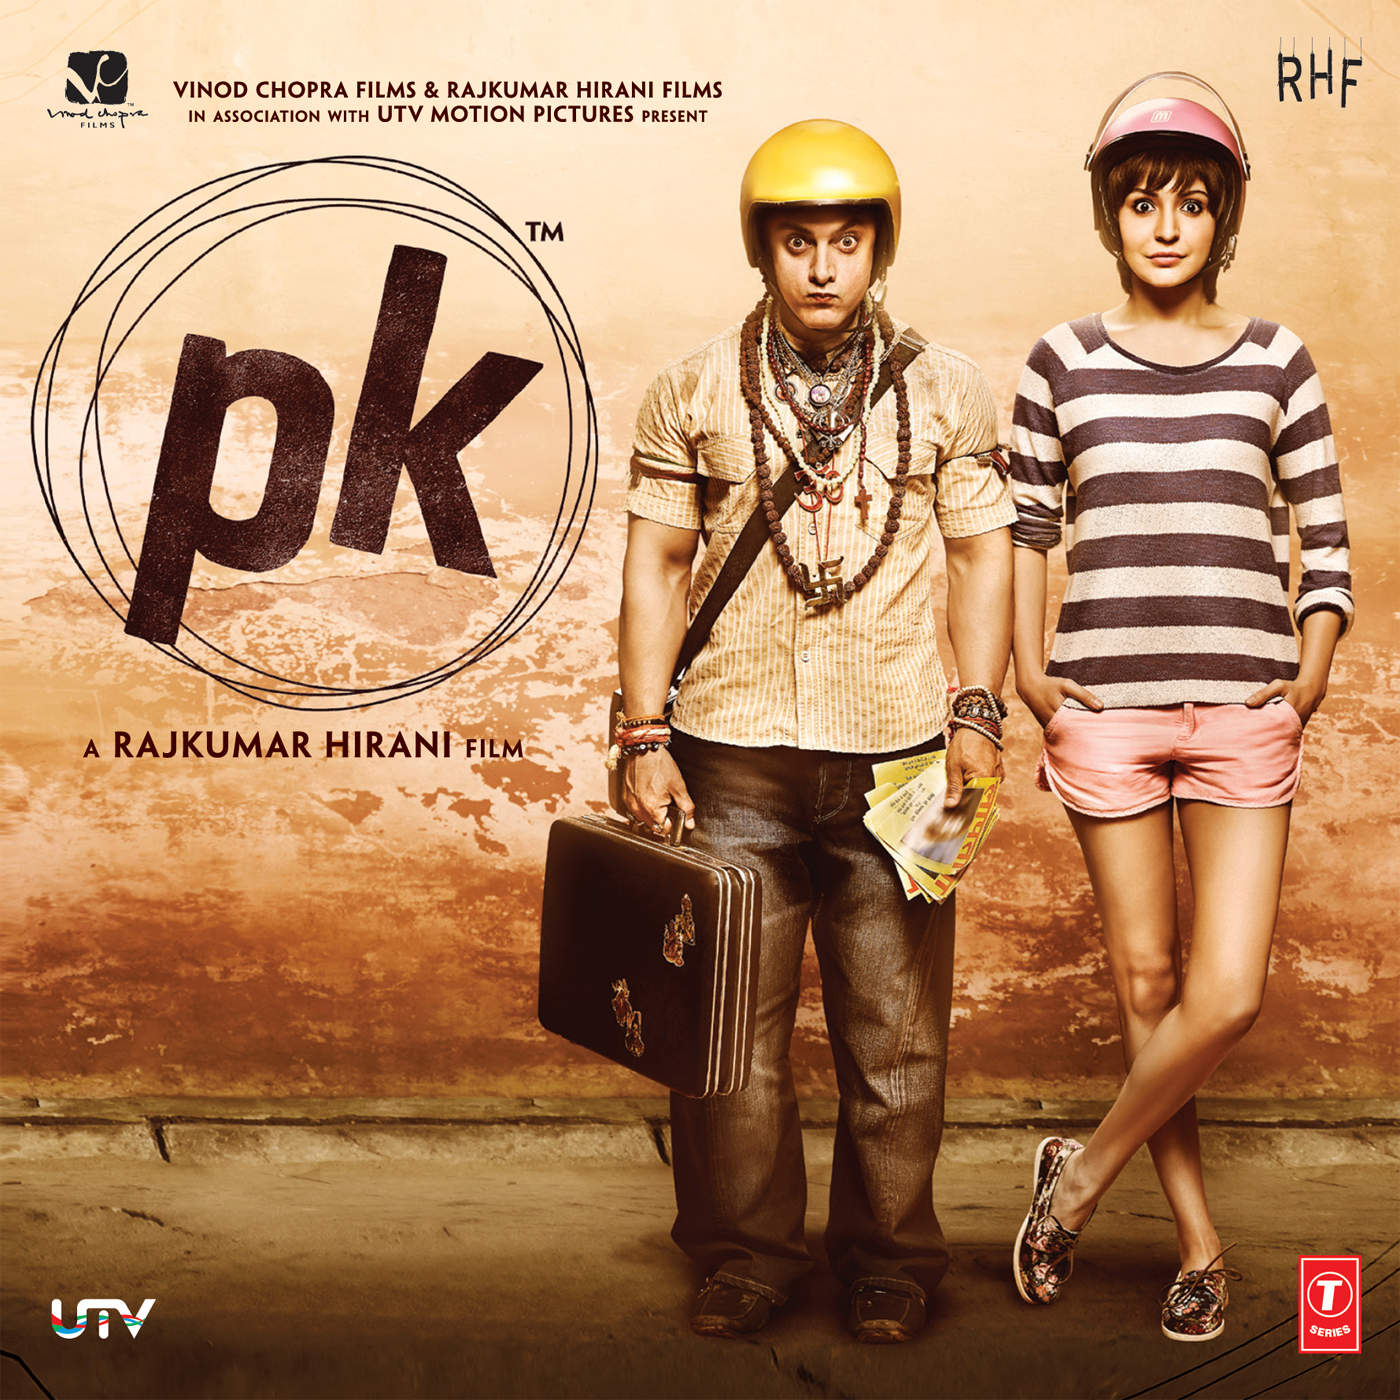 Rajkumar Hirani directed PK